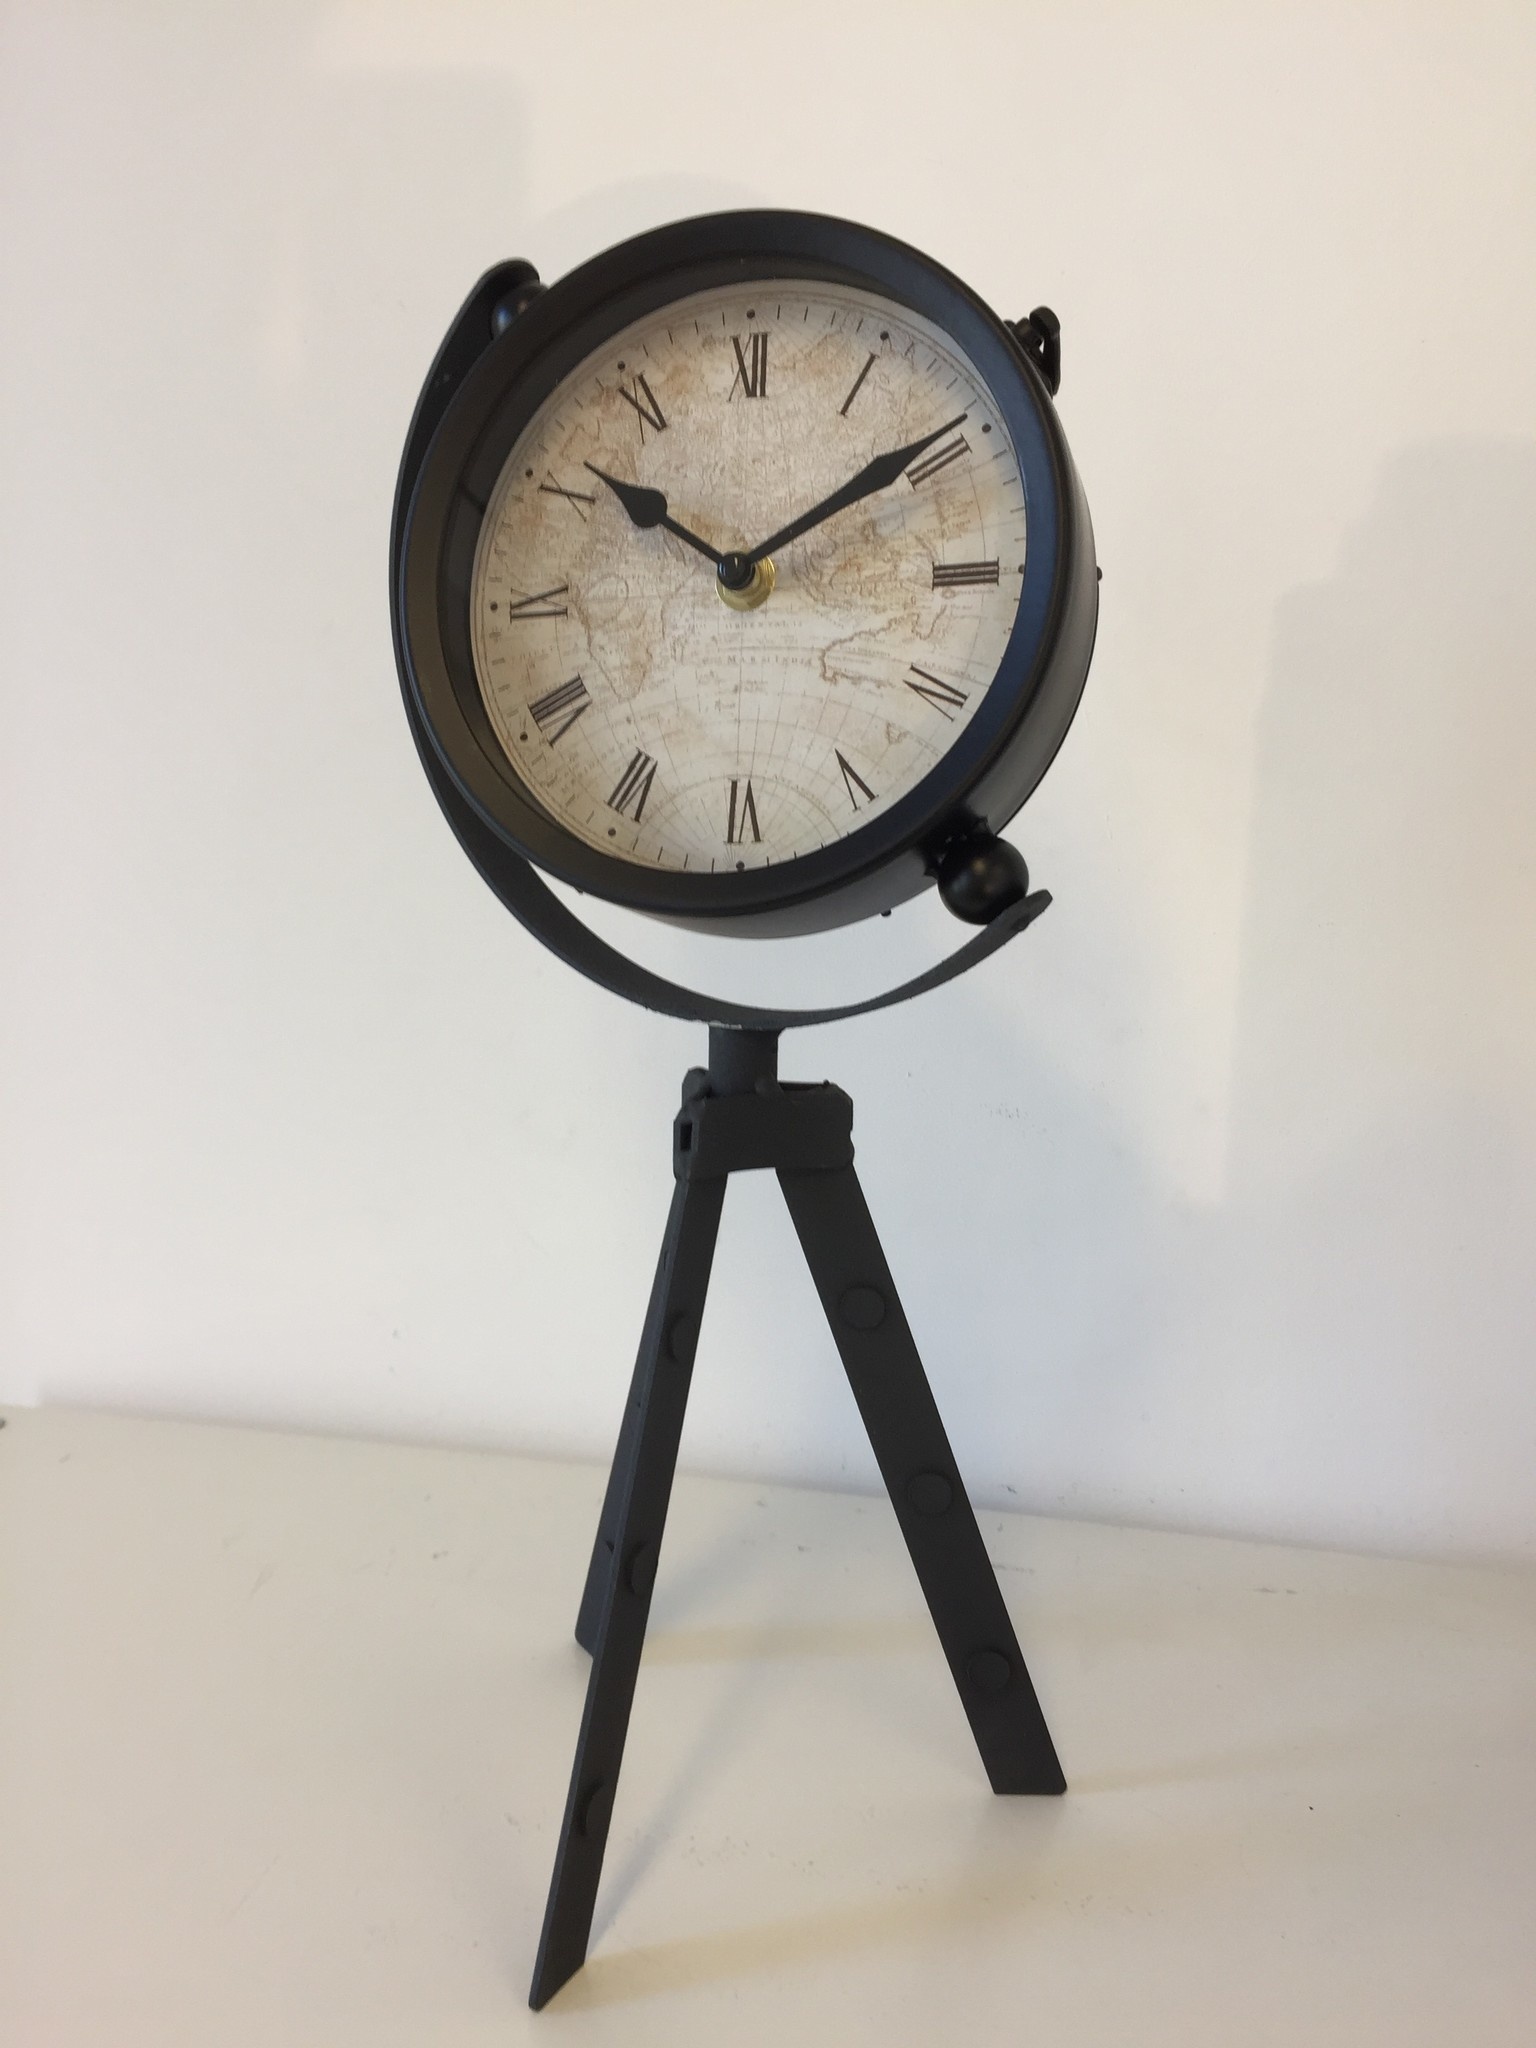 NiceTime Design - Table clock Vintage Black Industrial Design